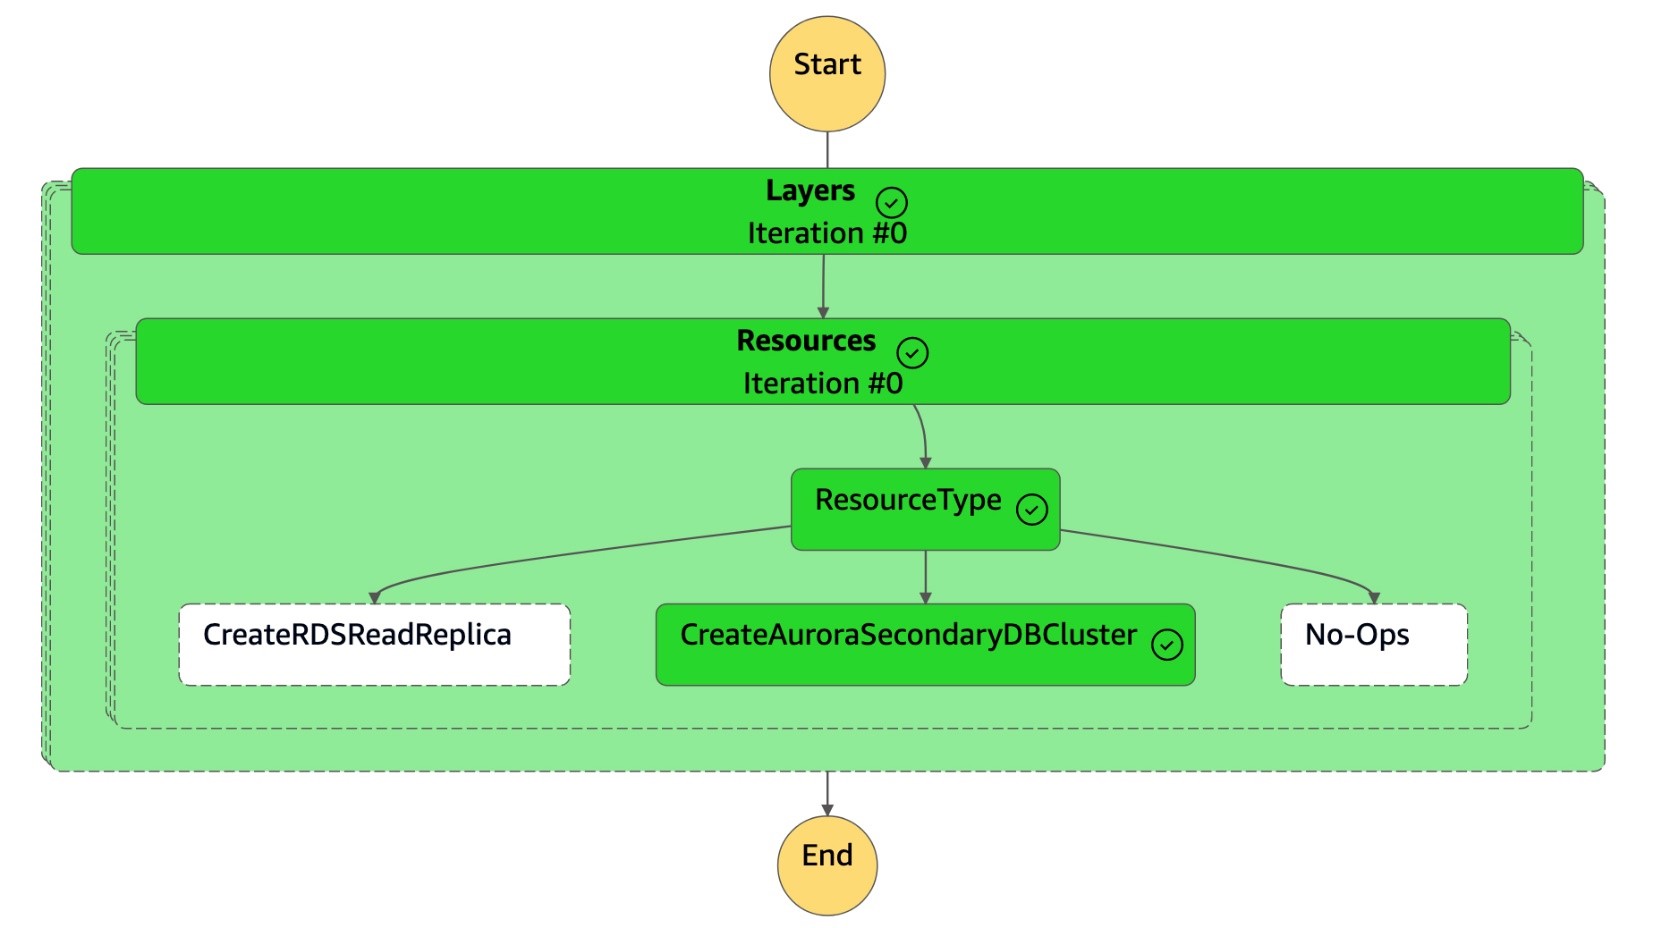 Le schéma de la machine d'état de CreateAuroraSecondary DBCluster est terminé.